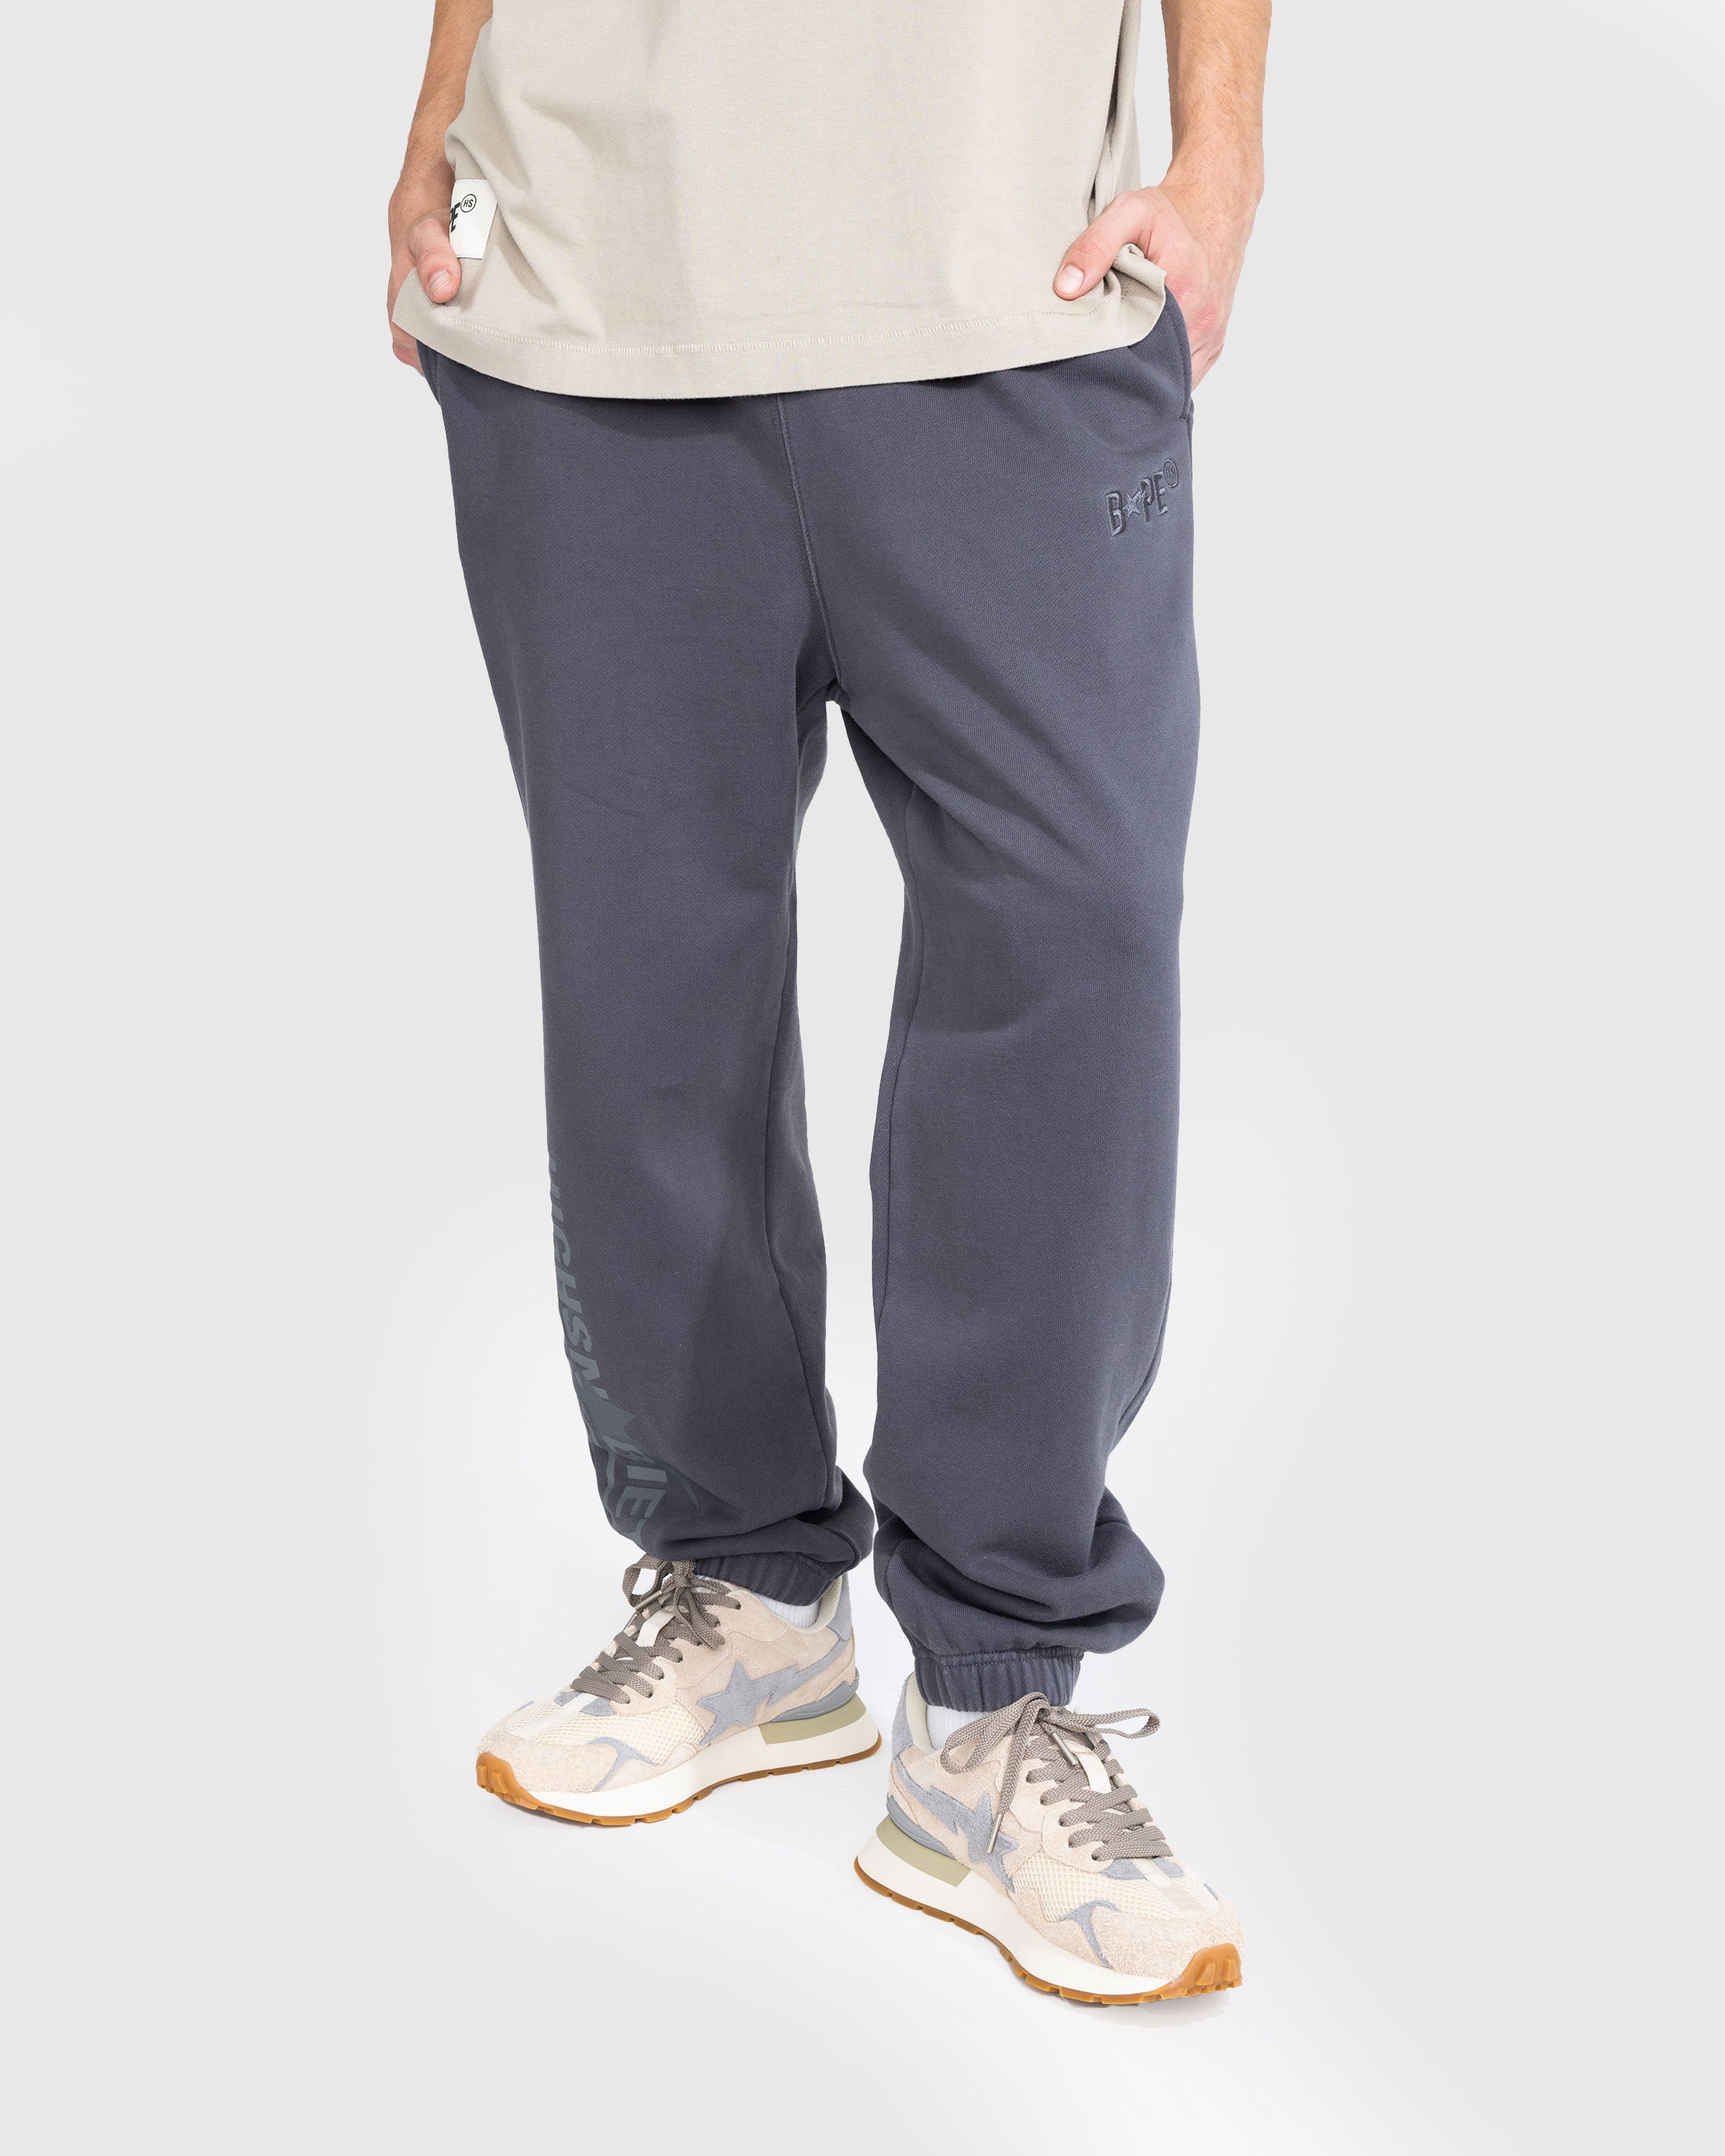 BAPE x Highsnobiety - Heavy Washed Sweat Pants Charcoal - Clothing - Grey - Image 3